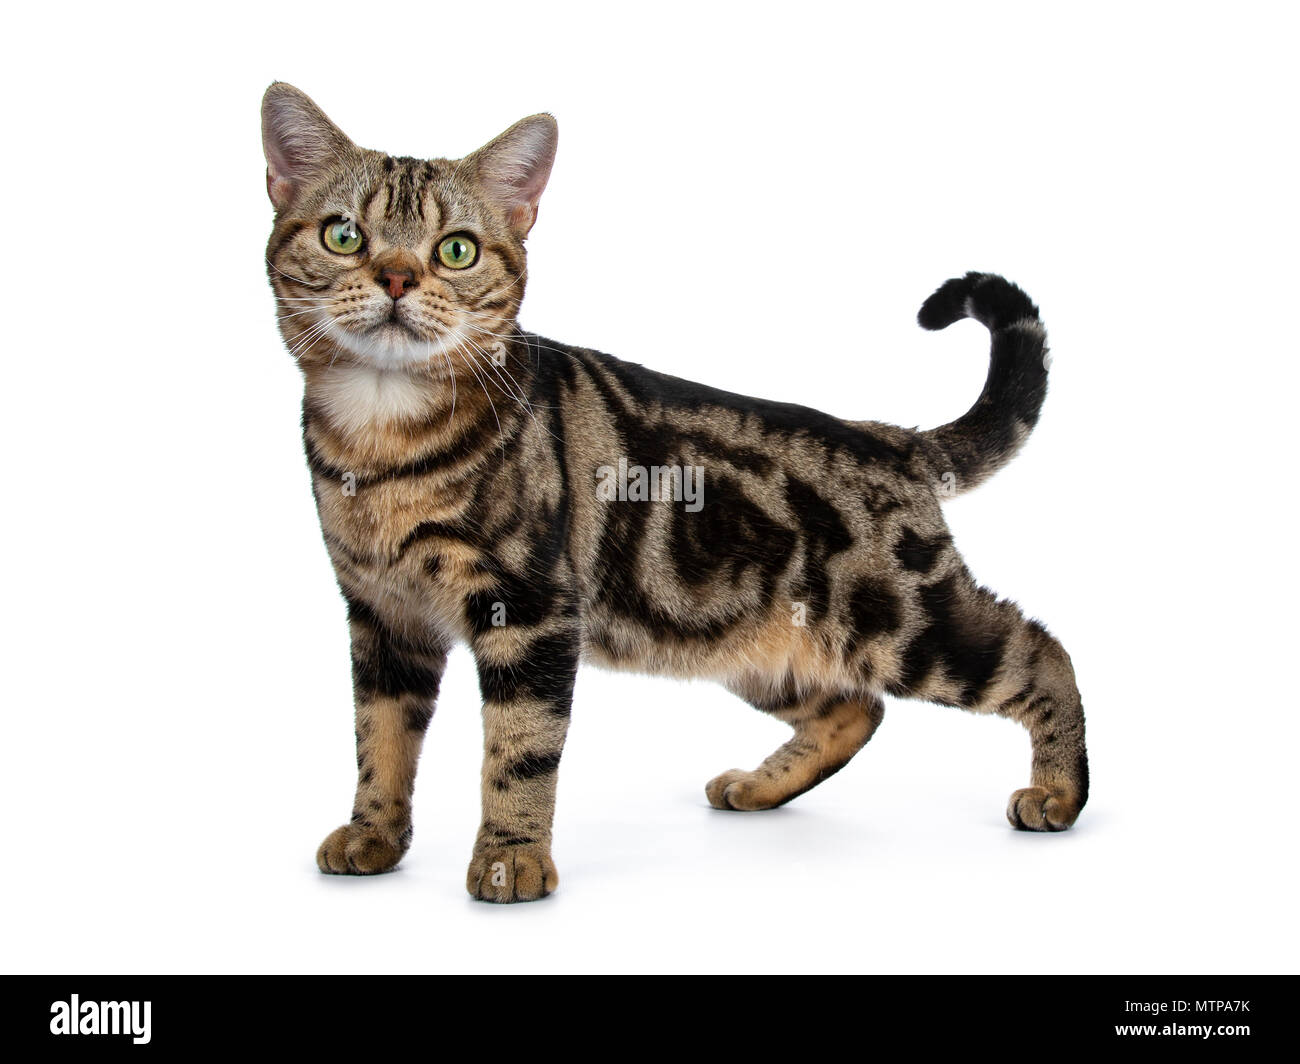 Marrón y negro atigrado American Shorthair cat kitten lateral permanente formas aislado sobre fondo blanco mirando a la cámara Foto de stock